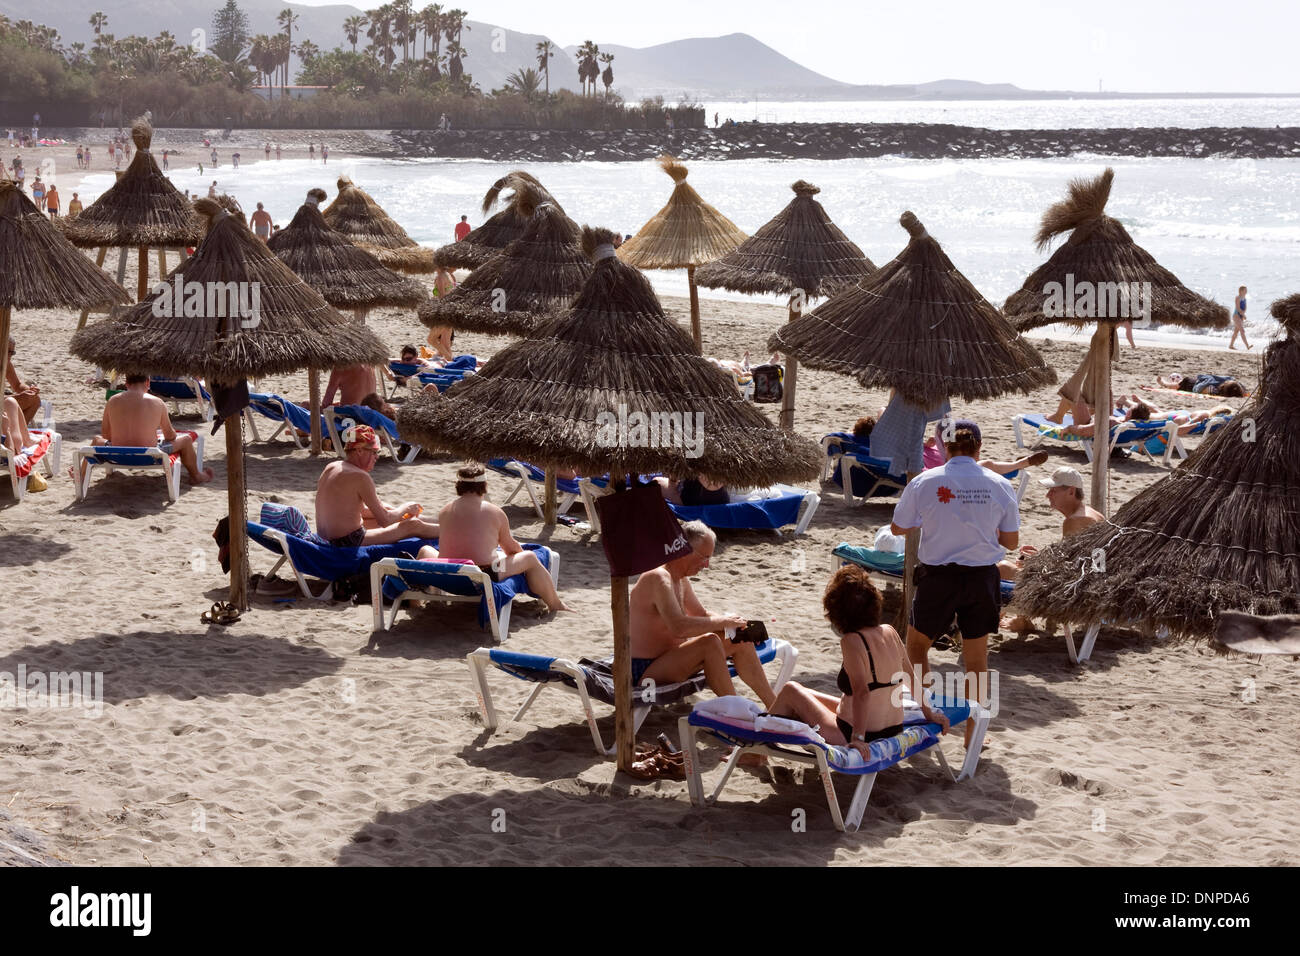 Playa del Camison, Playa de las Americas, Tenerife, Spain Stock Photo